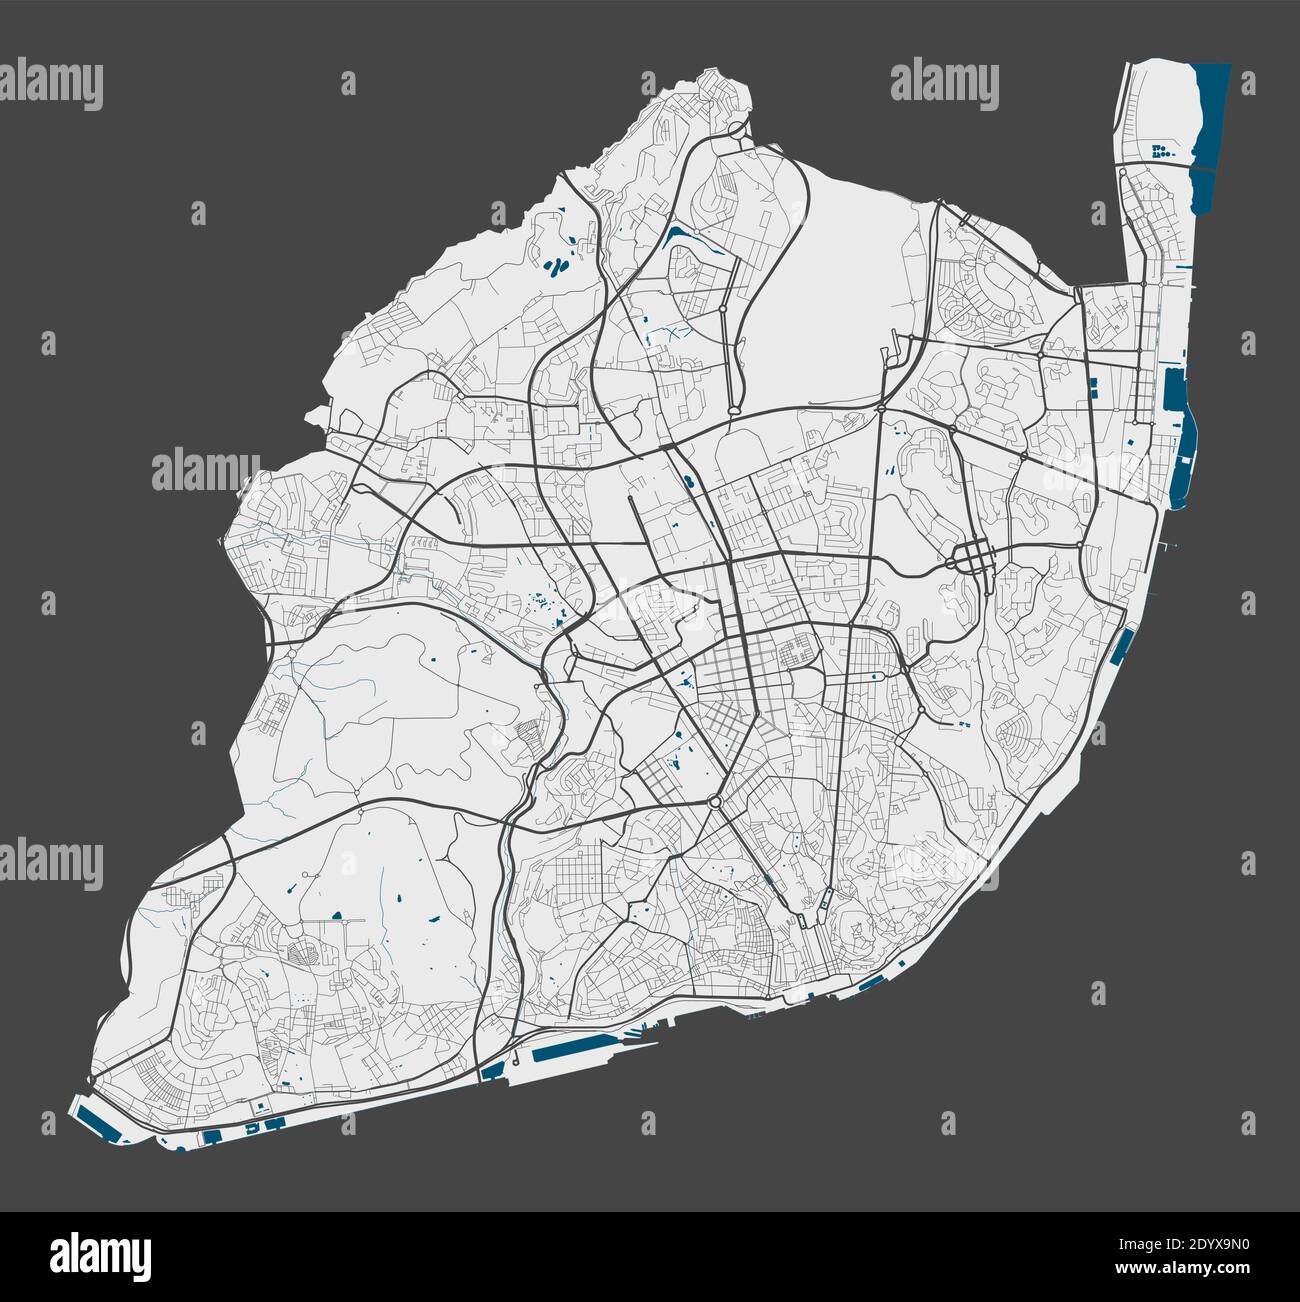 Mappa di Lisboa. Mappa dettagliata dell'area amministrativa della città di Lisboa. Panorama cittadino. Illustrazione vettoriale priva di royalty. Mappa lineare con autostrade, s Illustrazione Vettoriale